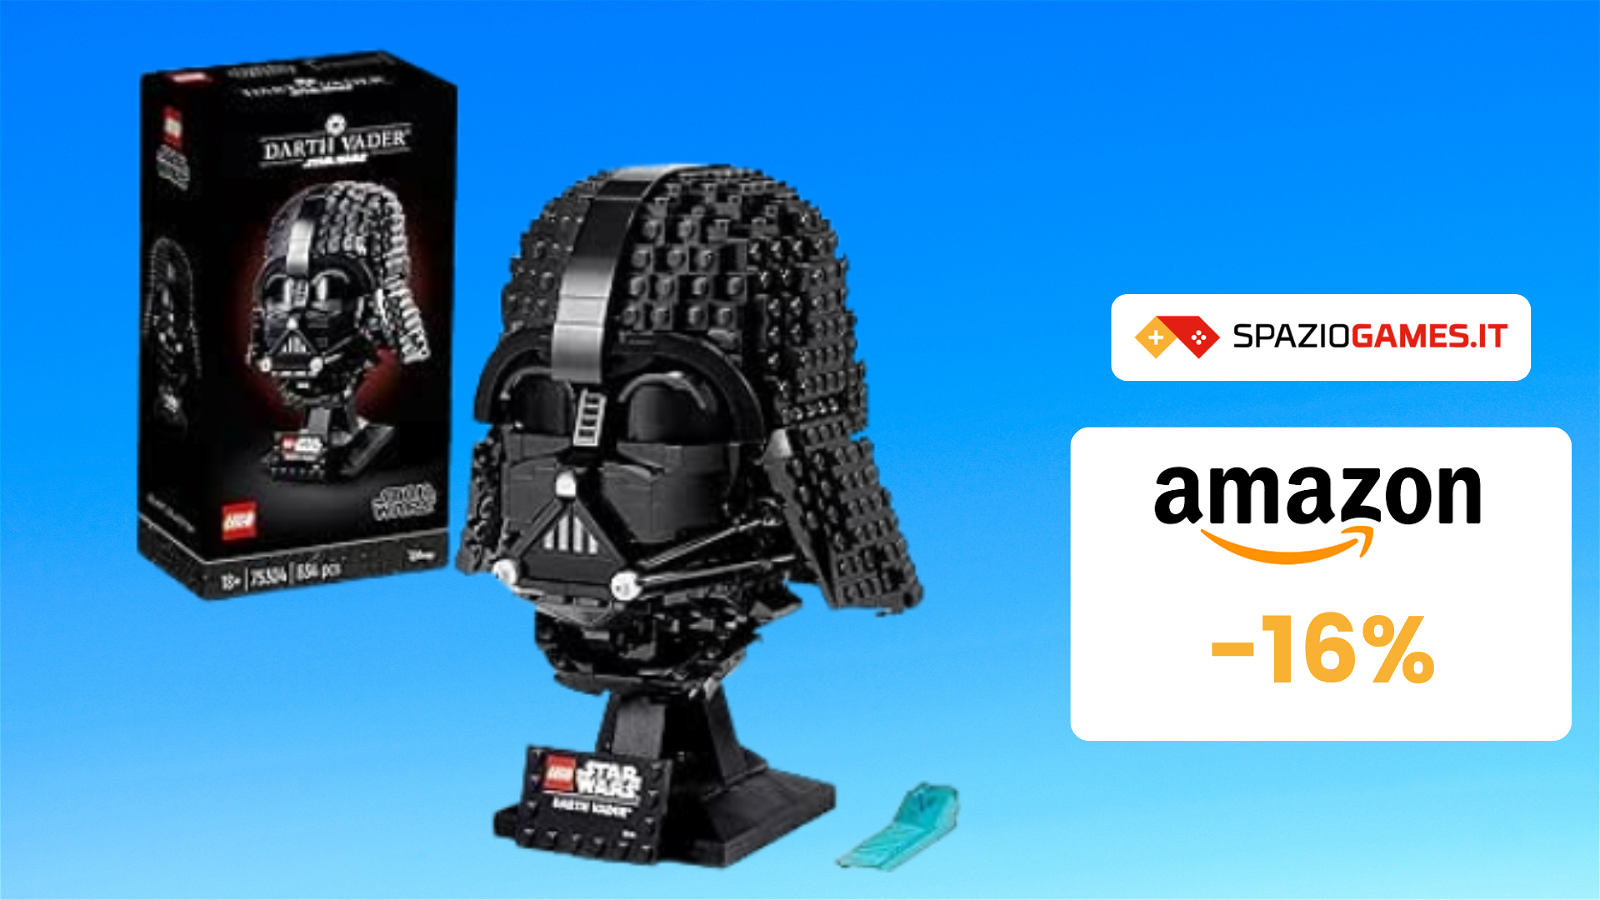 Benvenuti nel lato oscuro: casco di Darth Vader LEGO a 67€!